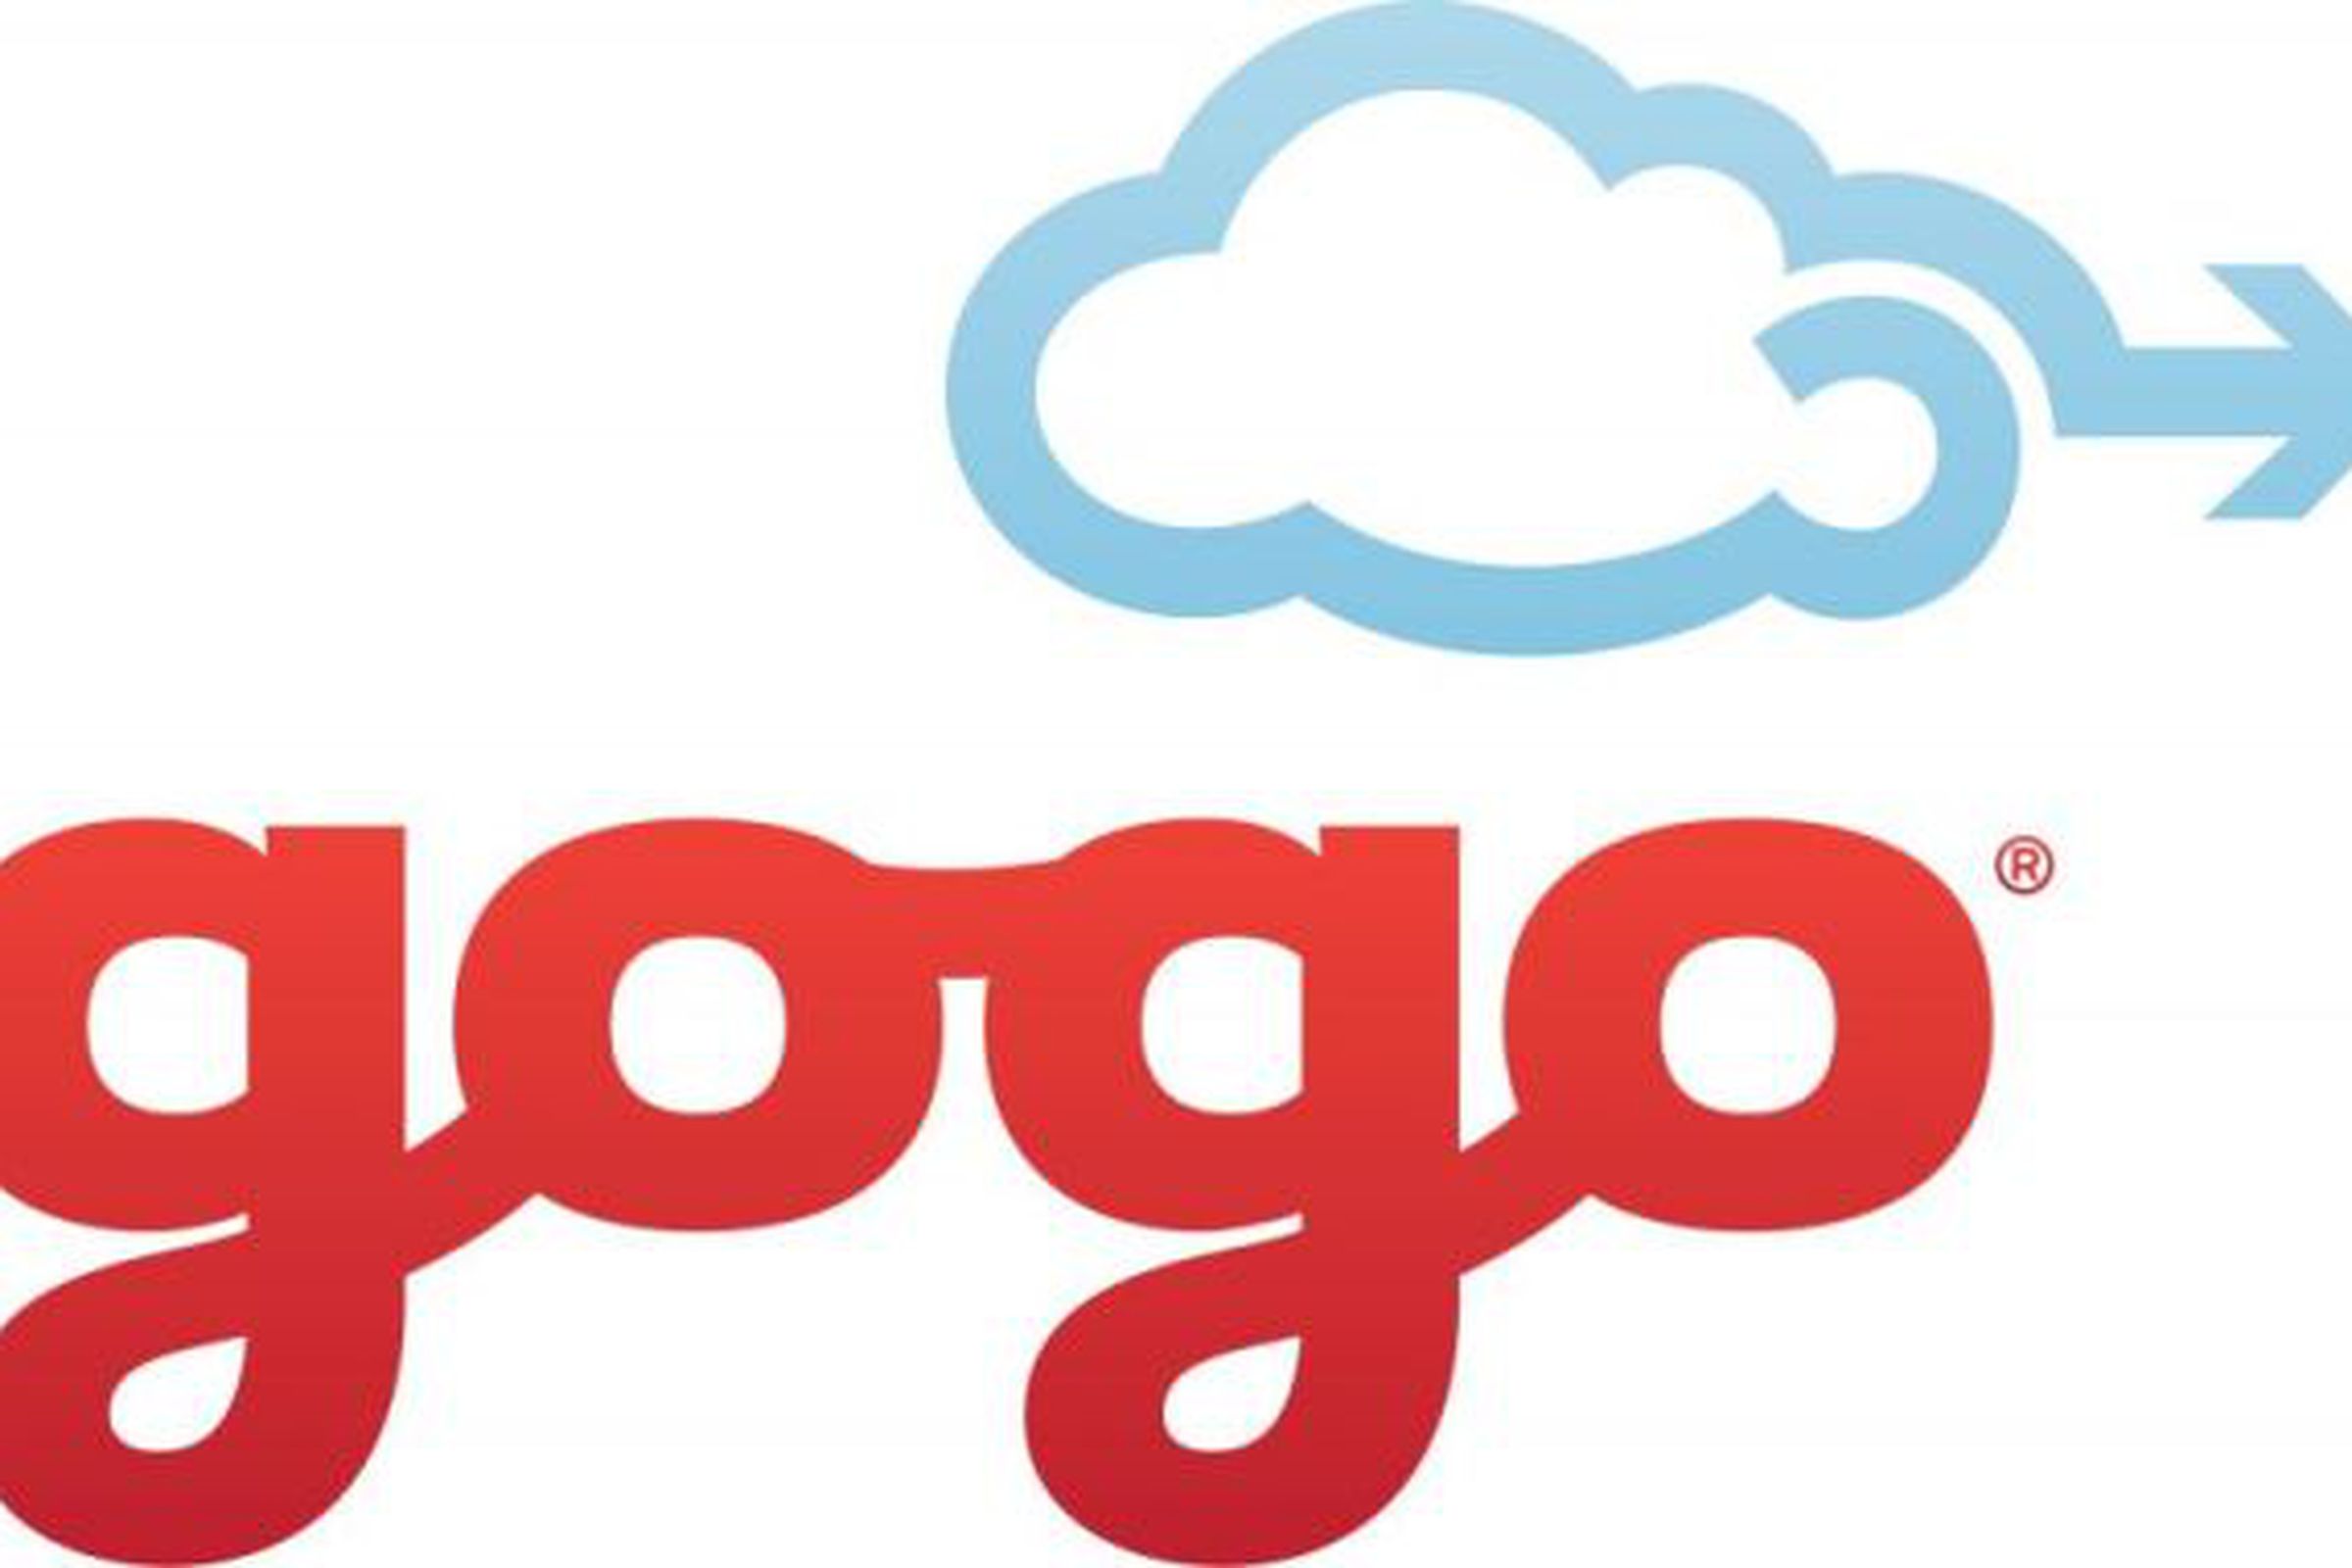 Gogo logo